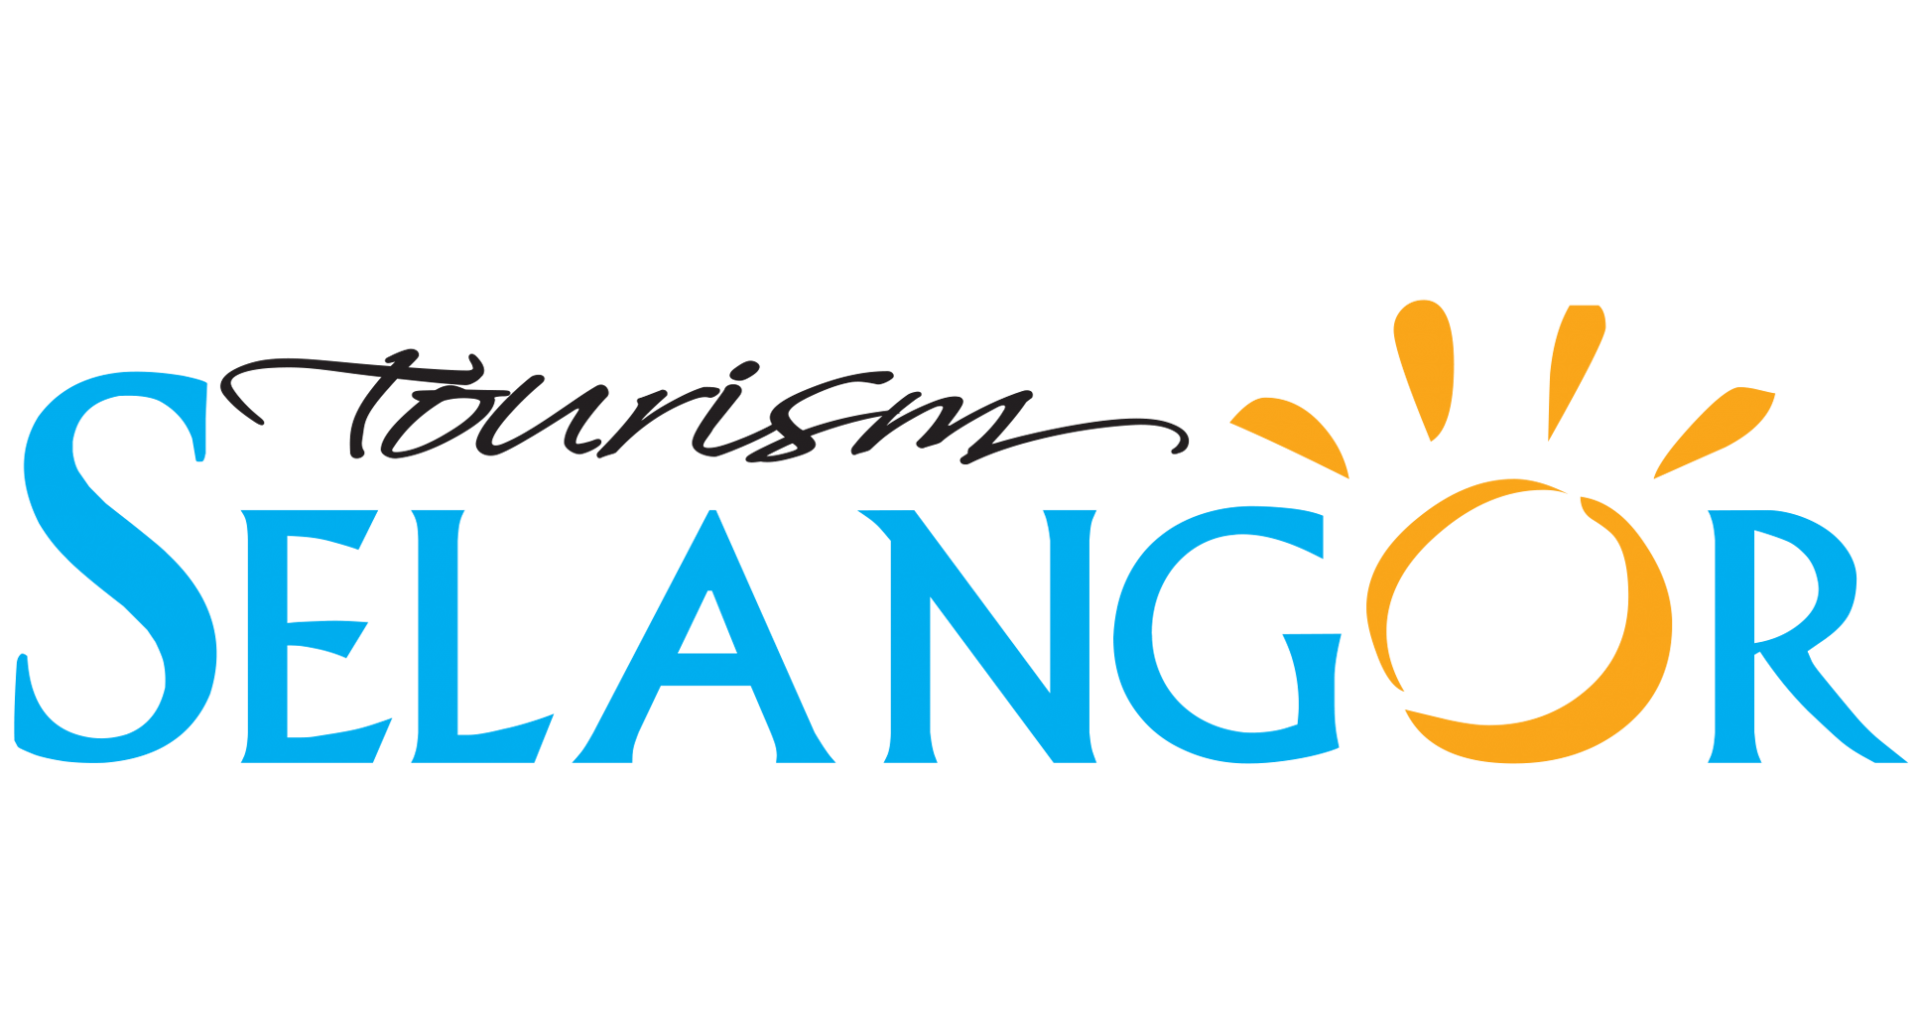 tourism selangor website